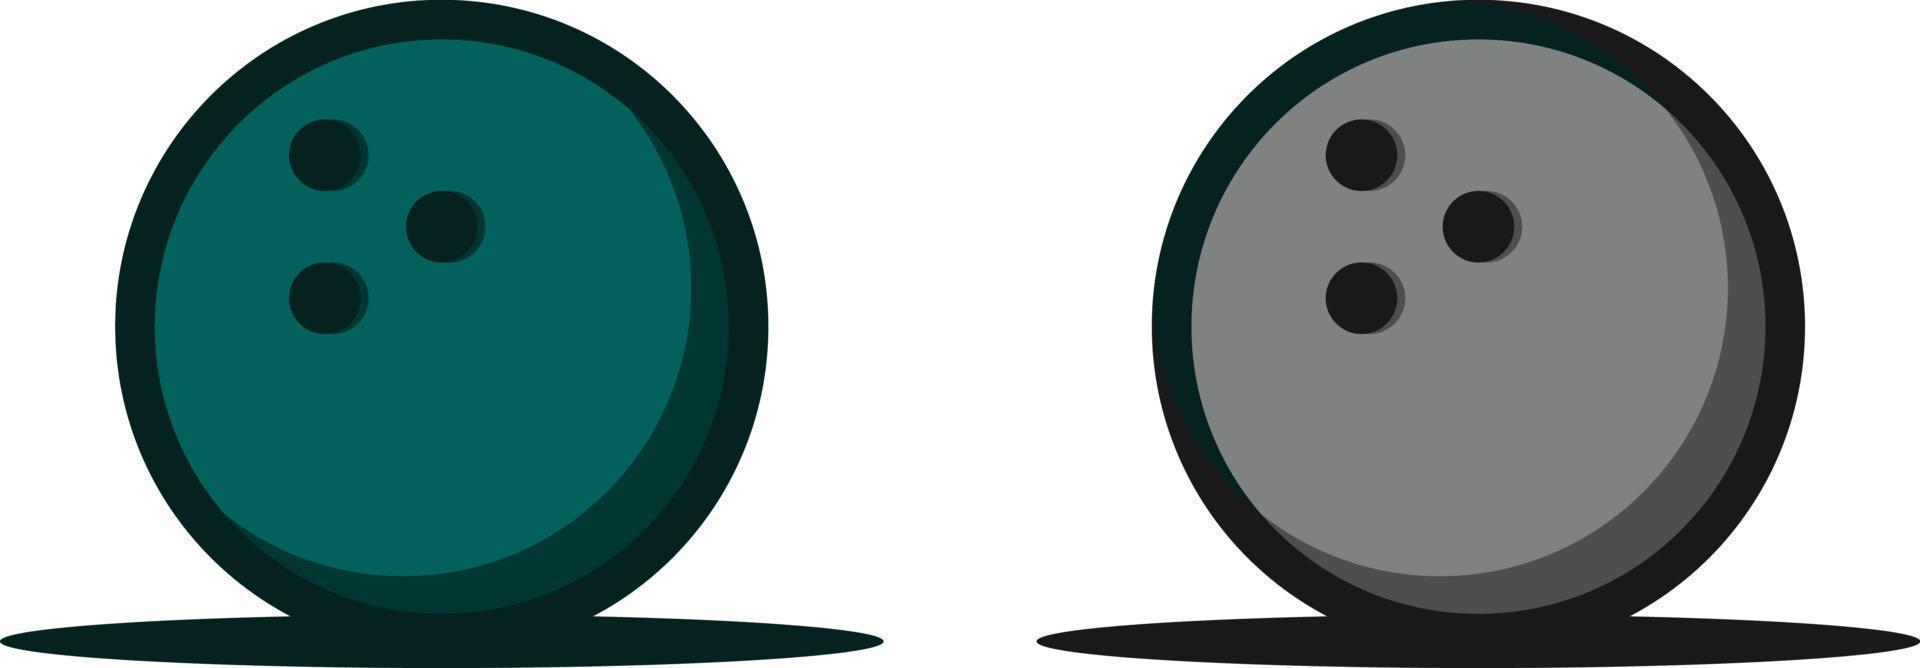 vektor illustration av två bowlingklot